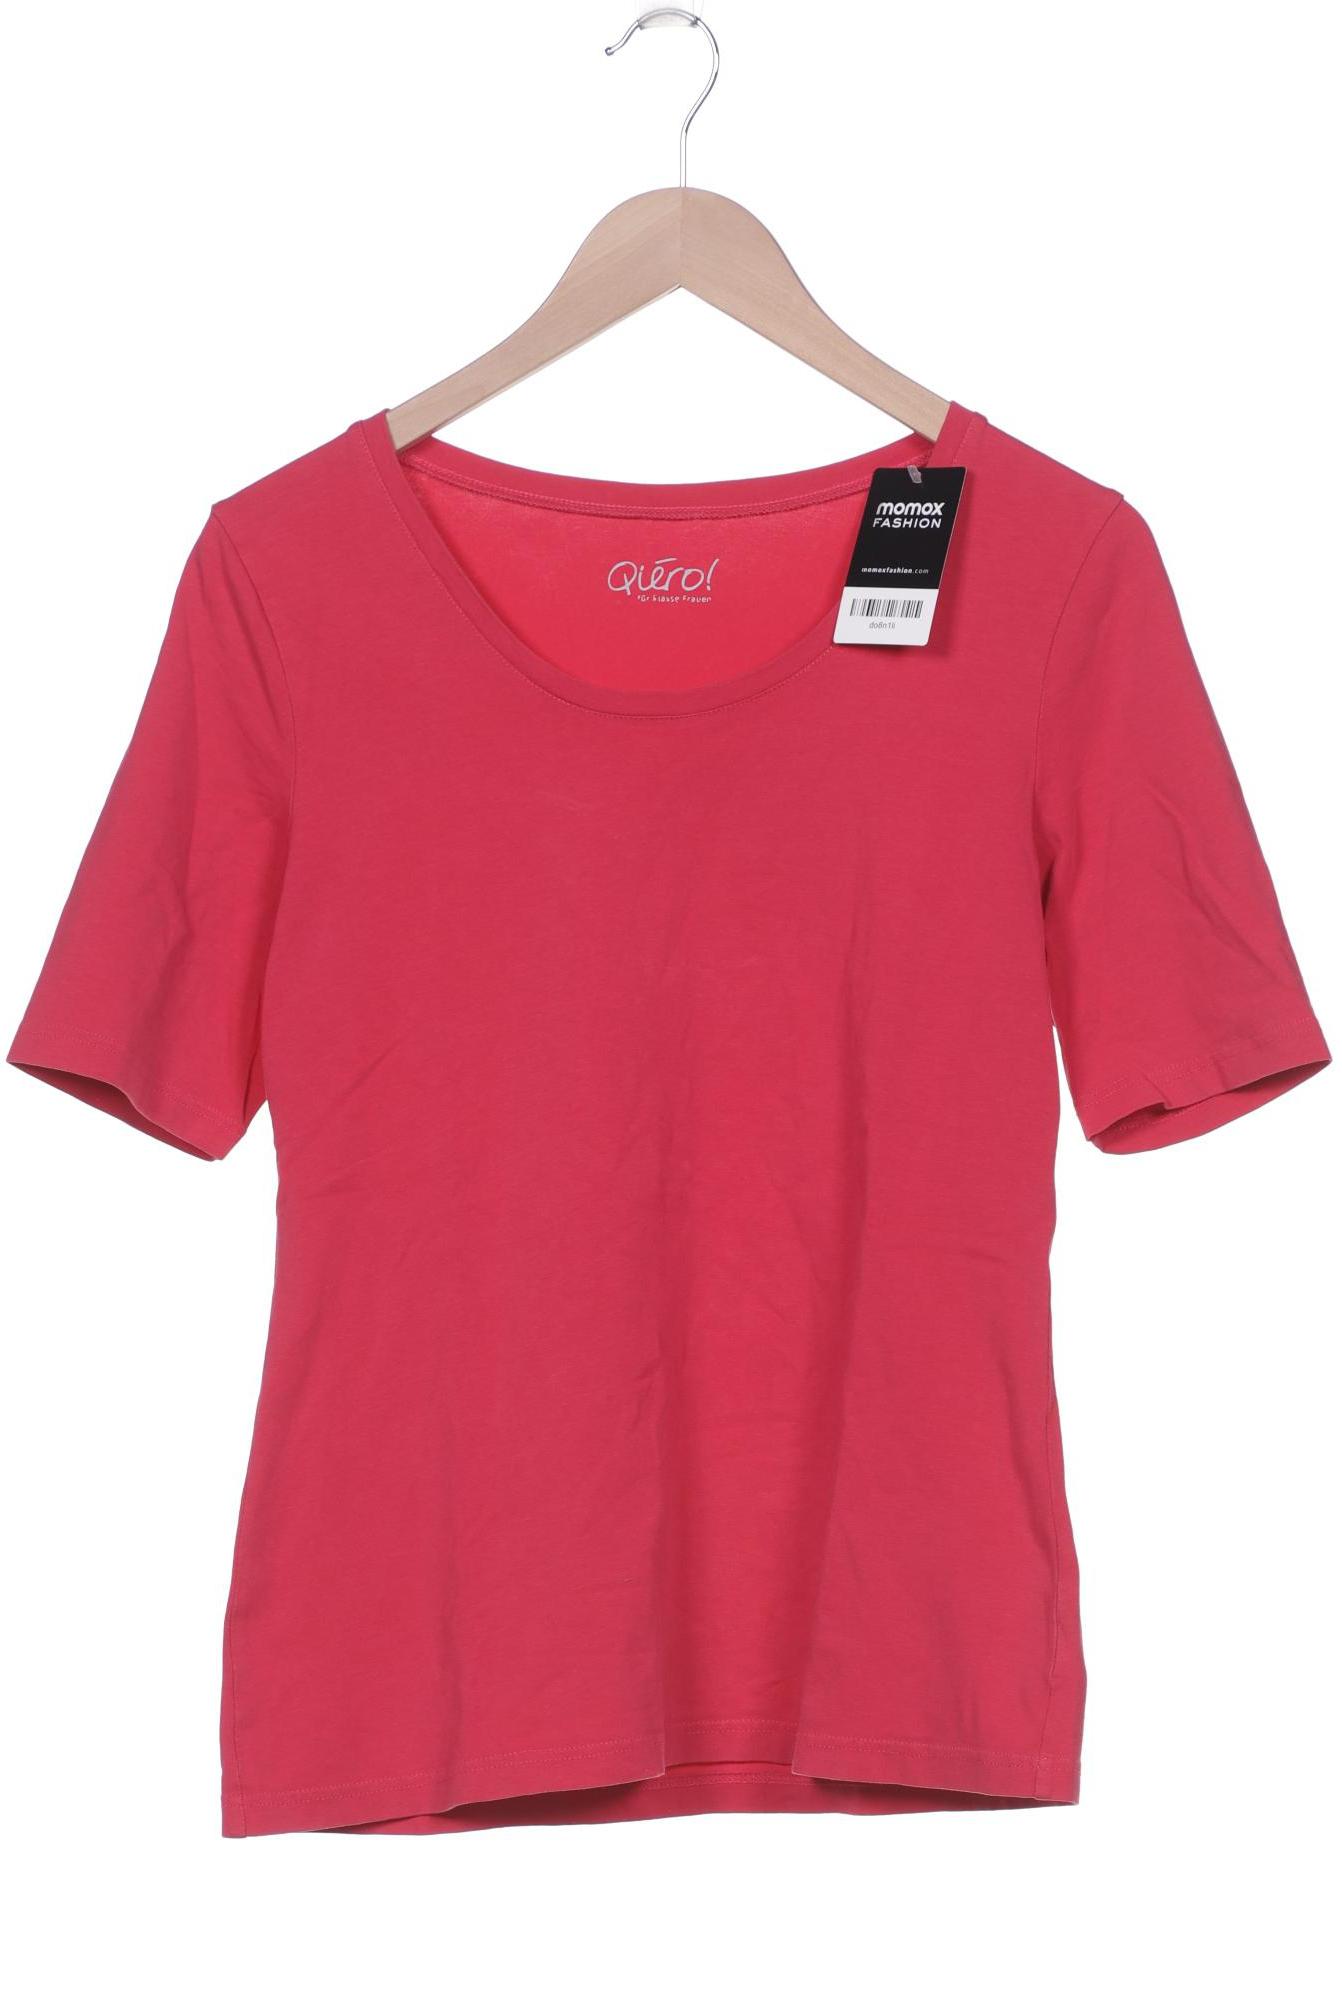 Qiero Damen T-Shirt, pink von Qiero